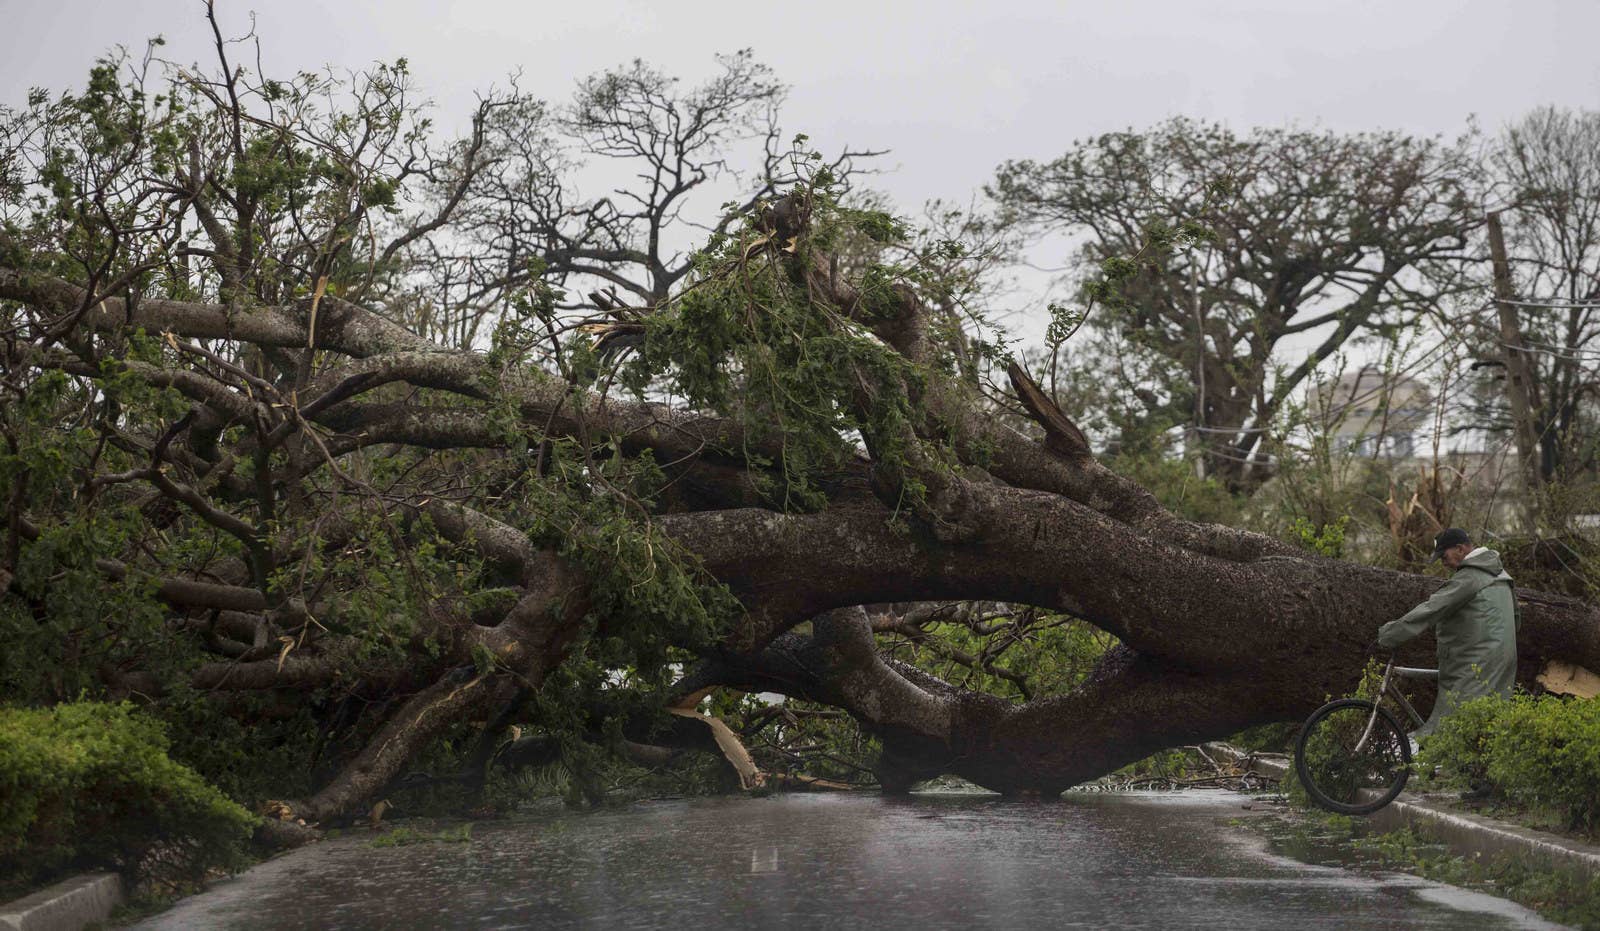 A big, fallen tree blocks a road